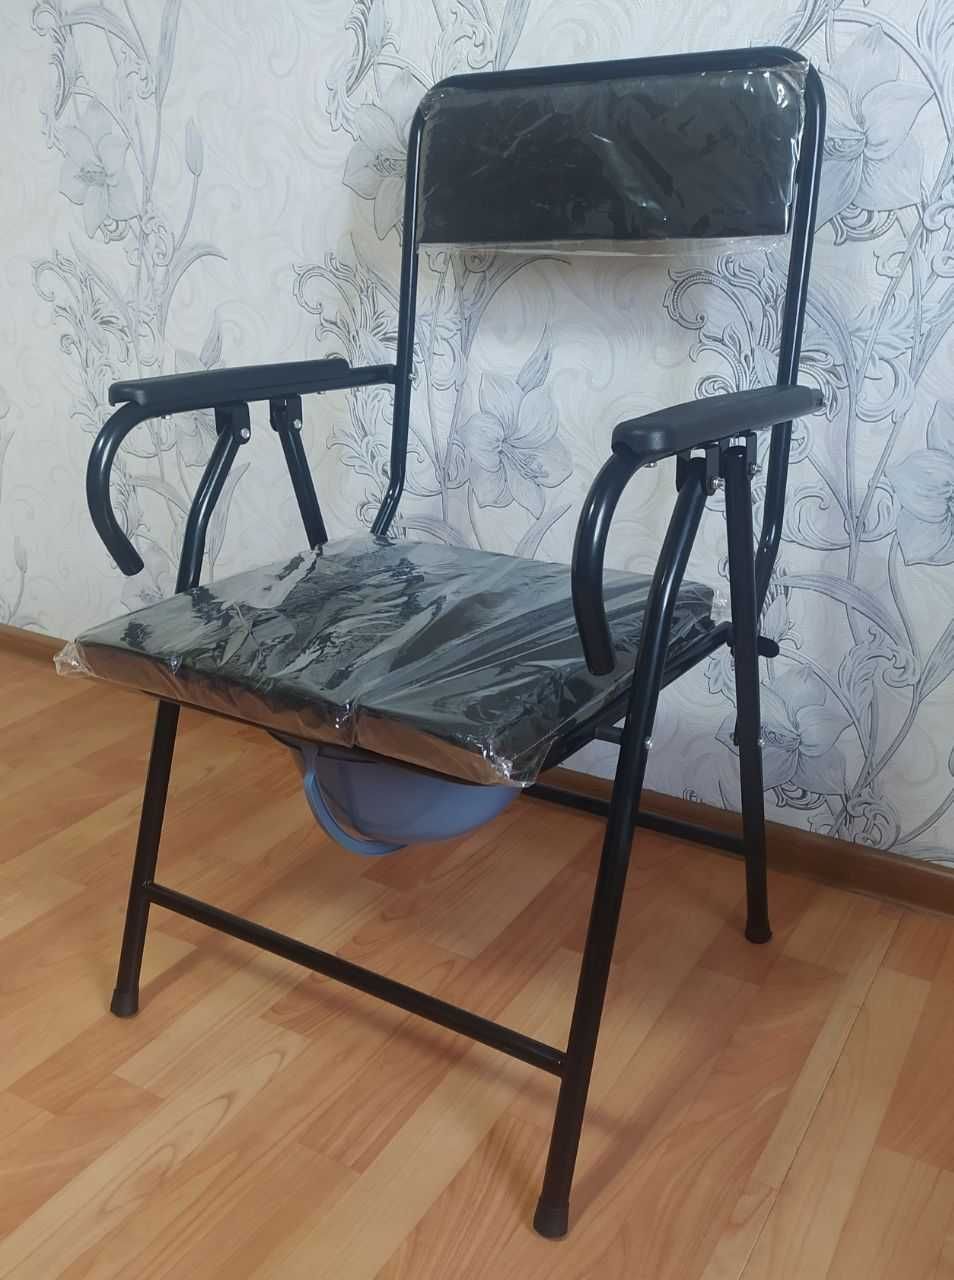 Новый стул горшок для пожилых. Доставка. Био туалет, складное кресло